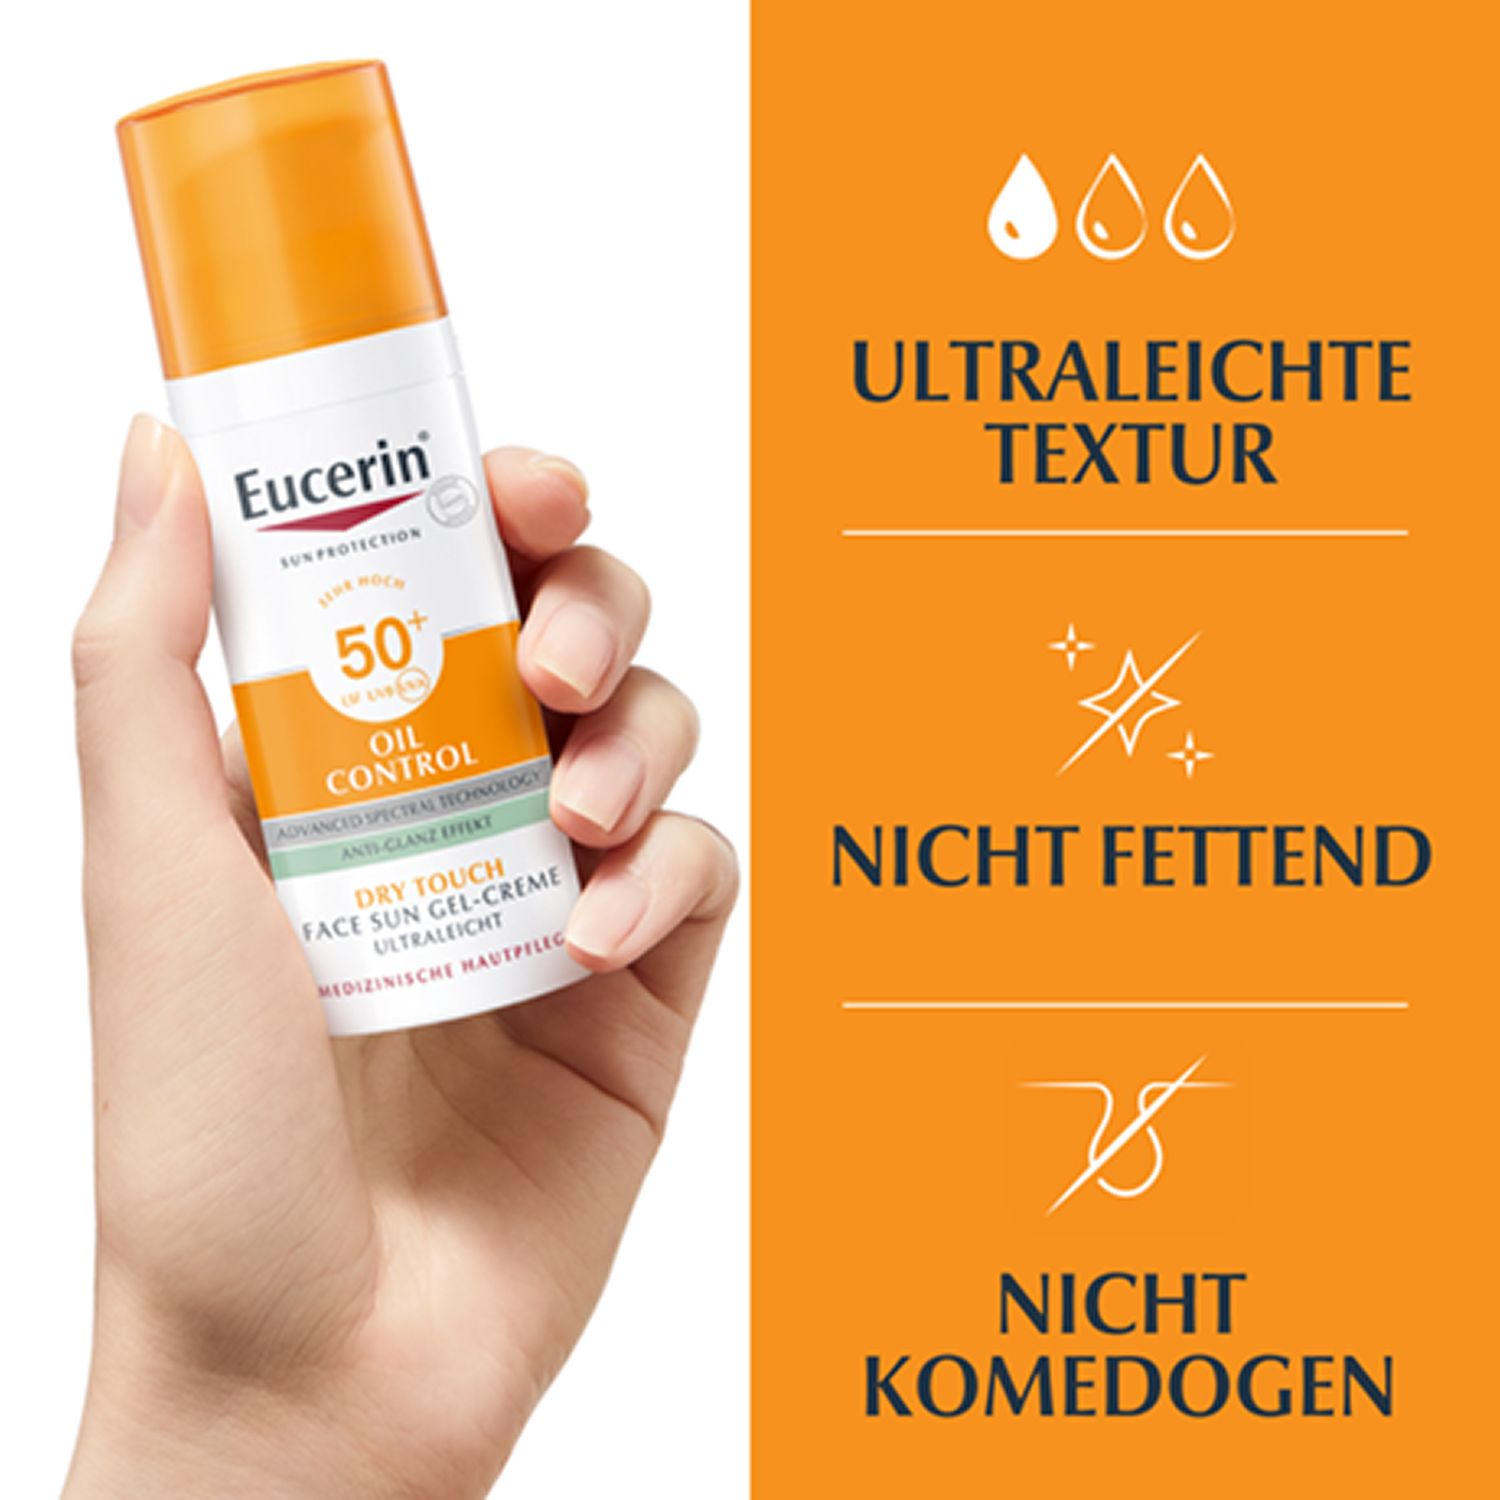 Eucerin® Oil Control Face Sun Gel-Creme LSF 50+ – sehr hoher Sonnenschutz mit 8 Stunden Anti-Glanz Effekt, auch für zu Akne neigende Haut - jetzt 20% sparen mit Code "sun20"